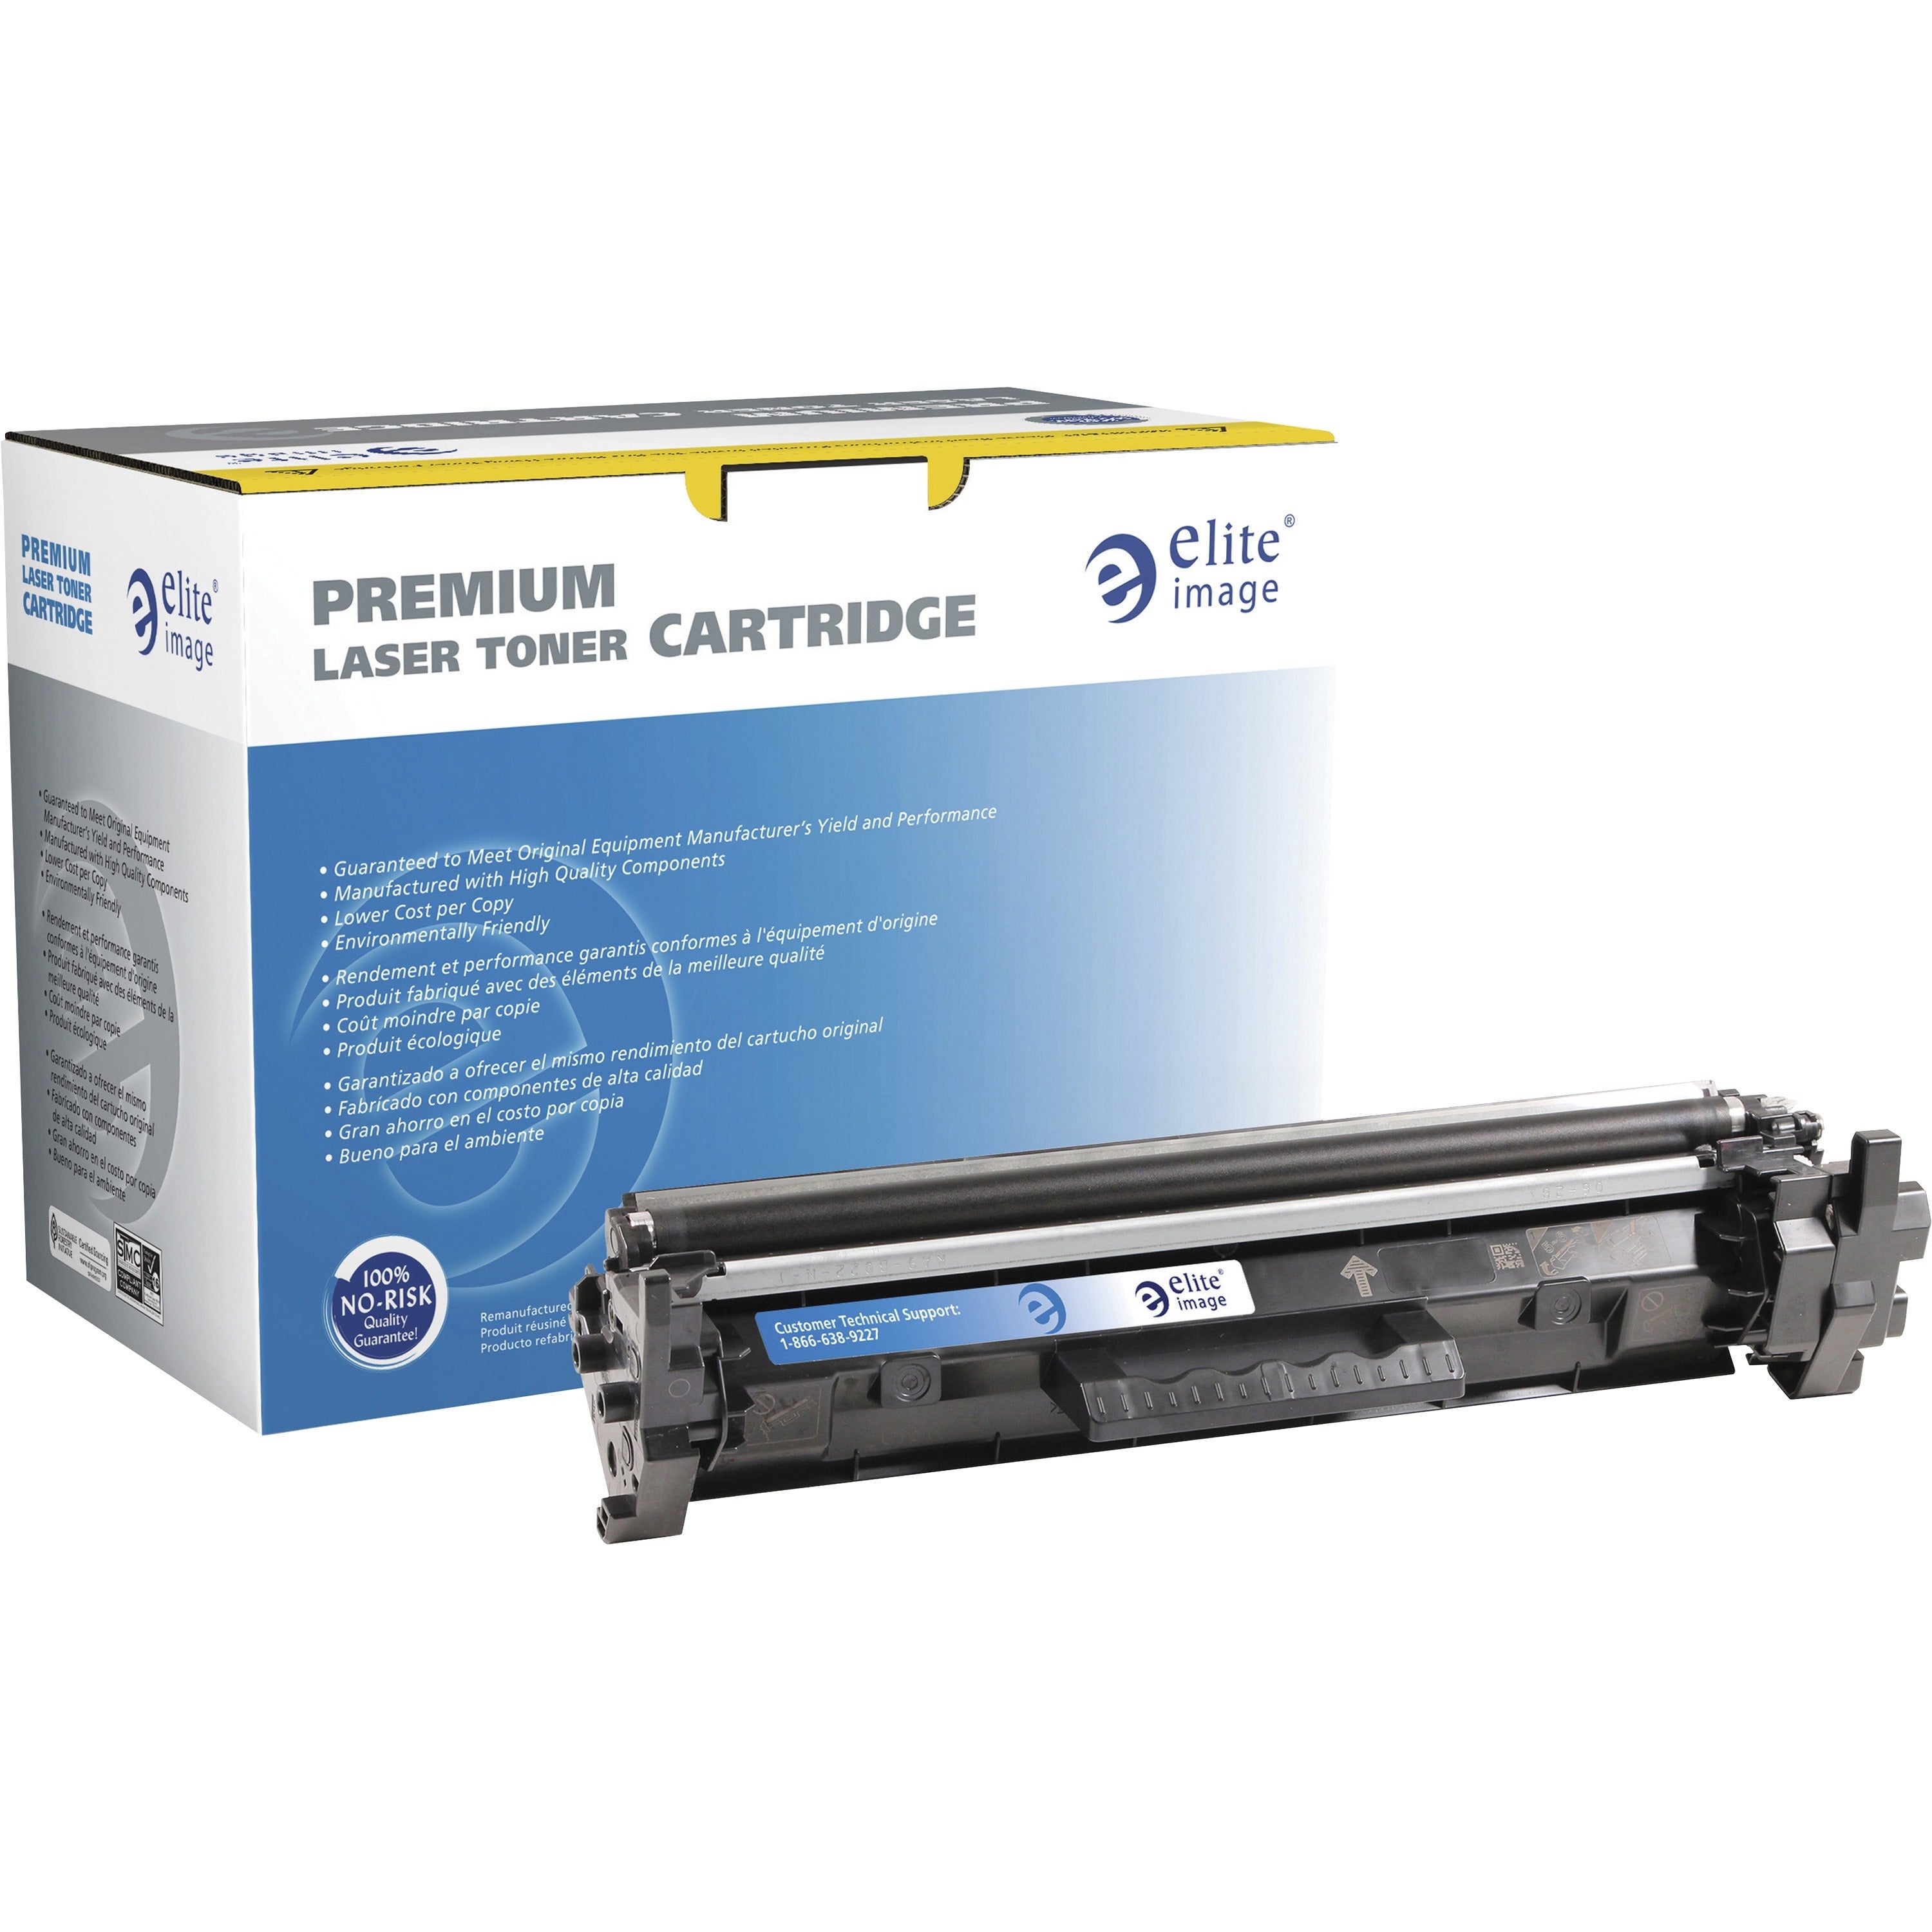 elite-image-remanufactured-laser-toner-cartridge-alternative-for-hp-30a-black-1-each-1600-pages_eli03433 - 1